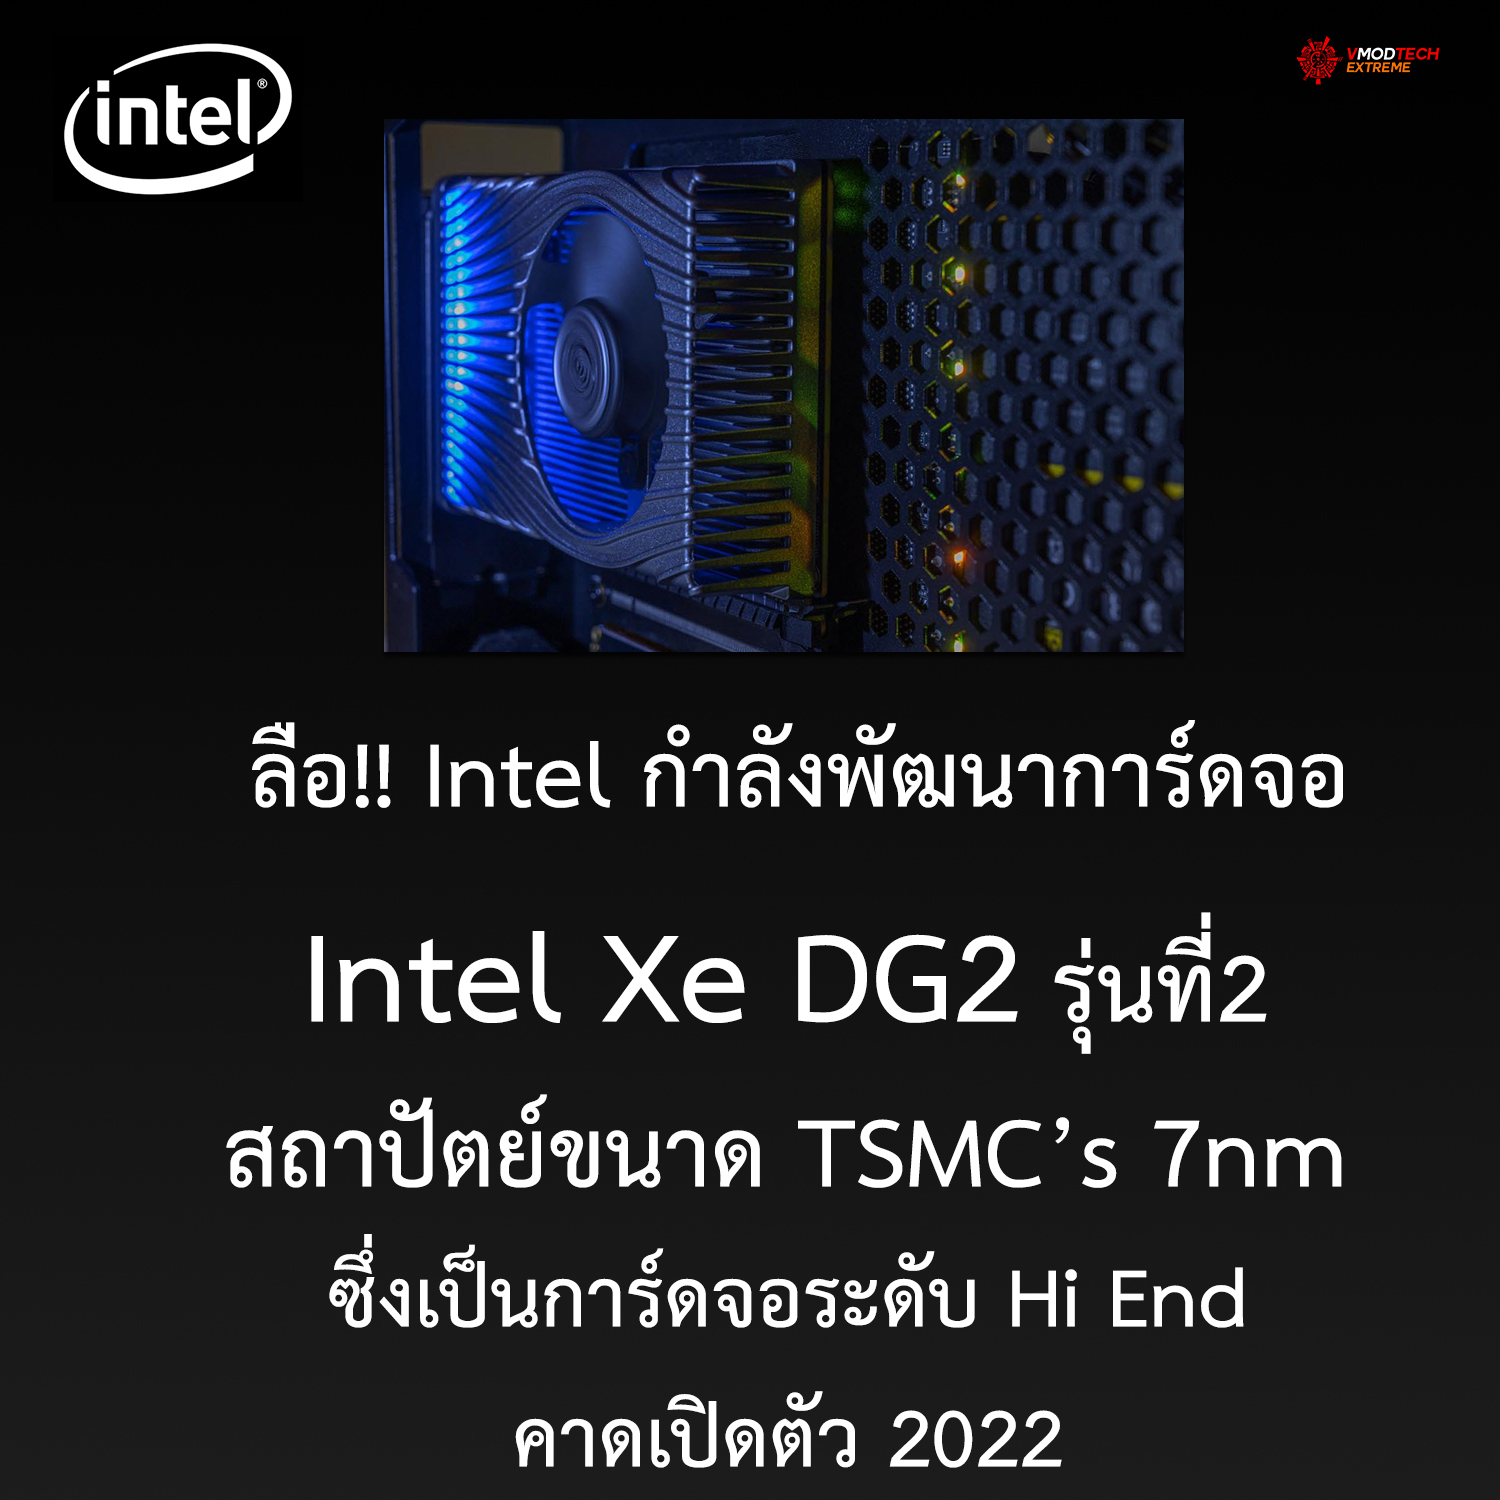 intel xe dg2 ลือ!! Intel กำลังพัฒนาการ์ดจอ Intel Xe DG2 รุ่นที่2 สถาปัตย์ 7nm ซึ่งเป็นการ์ดจอระดับ Hi End คาดเปิดตัว 2022 